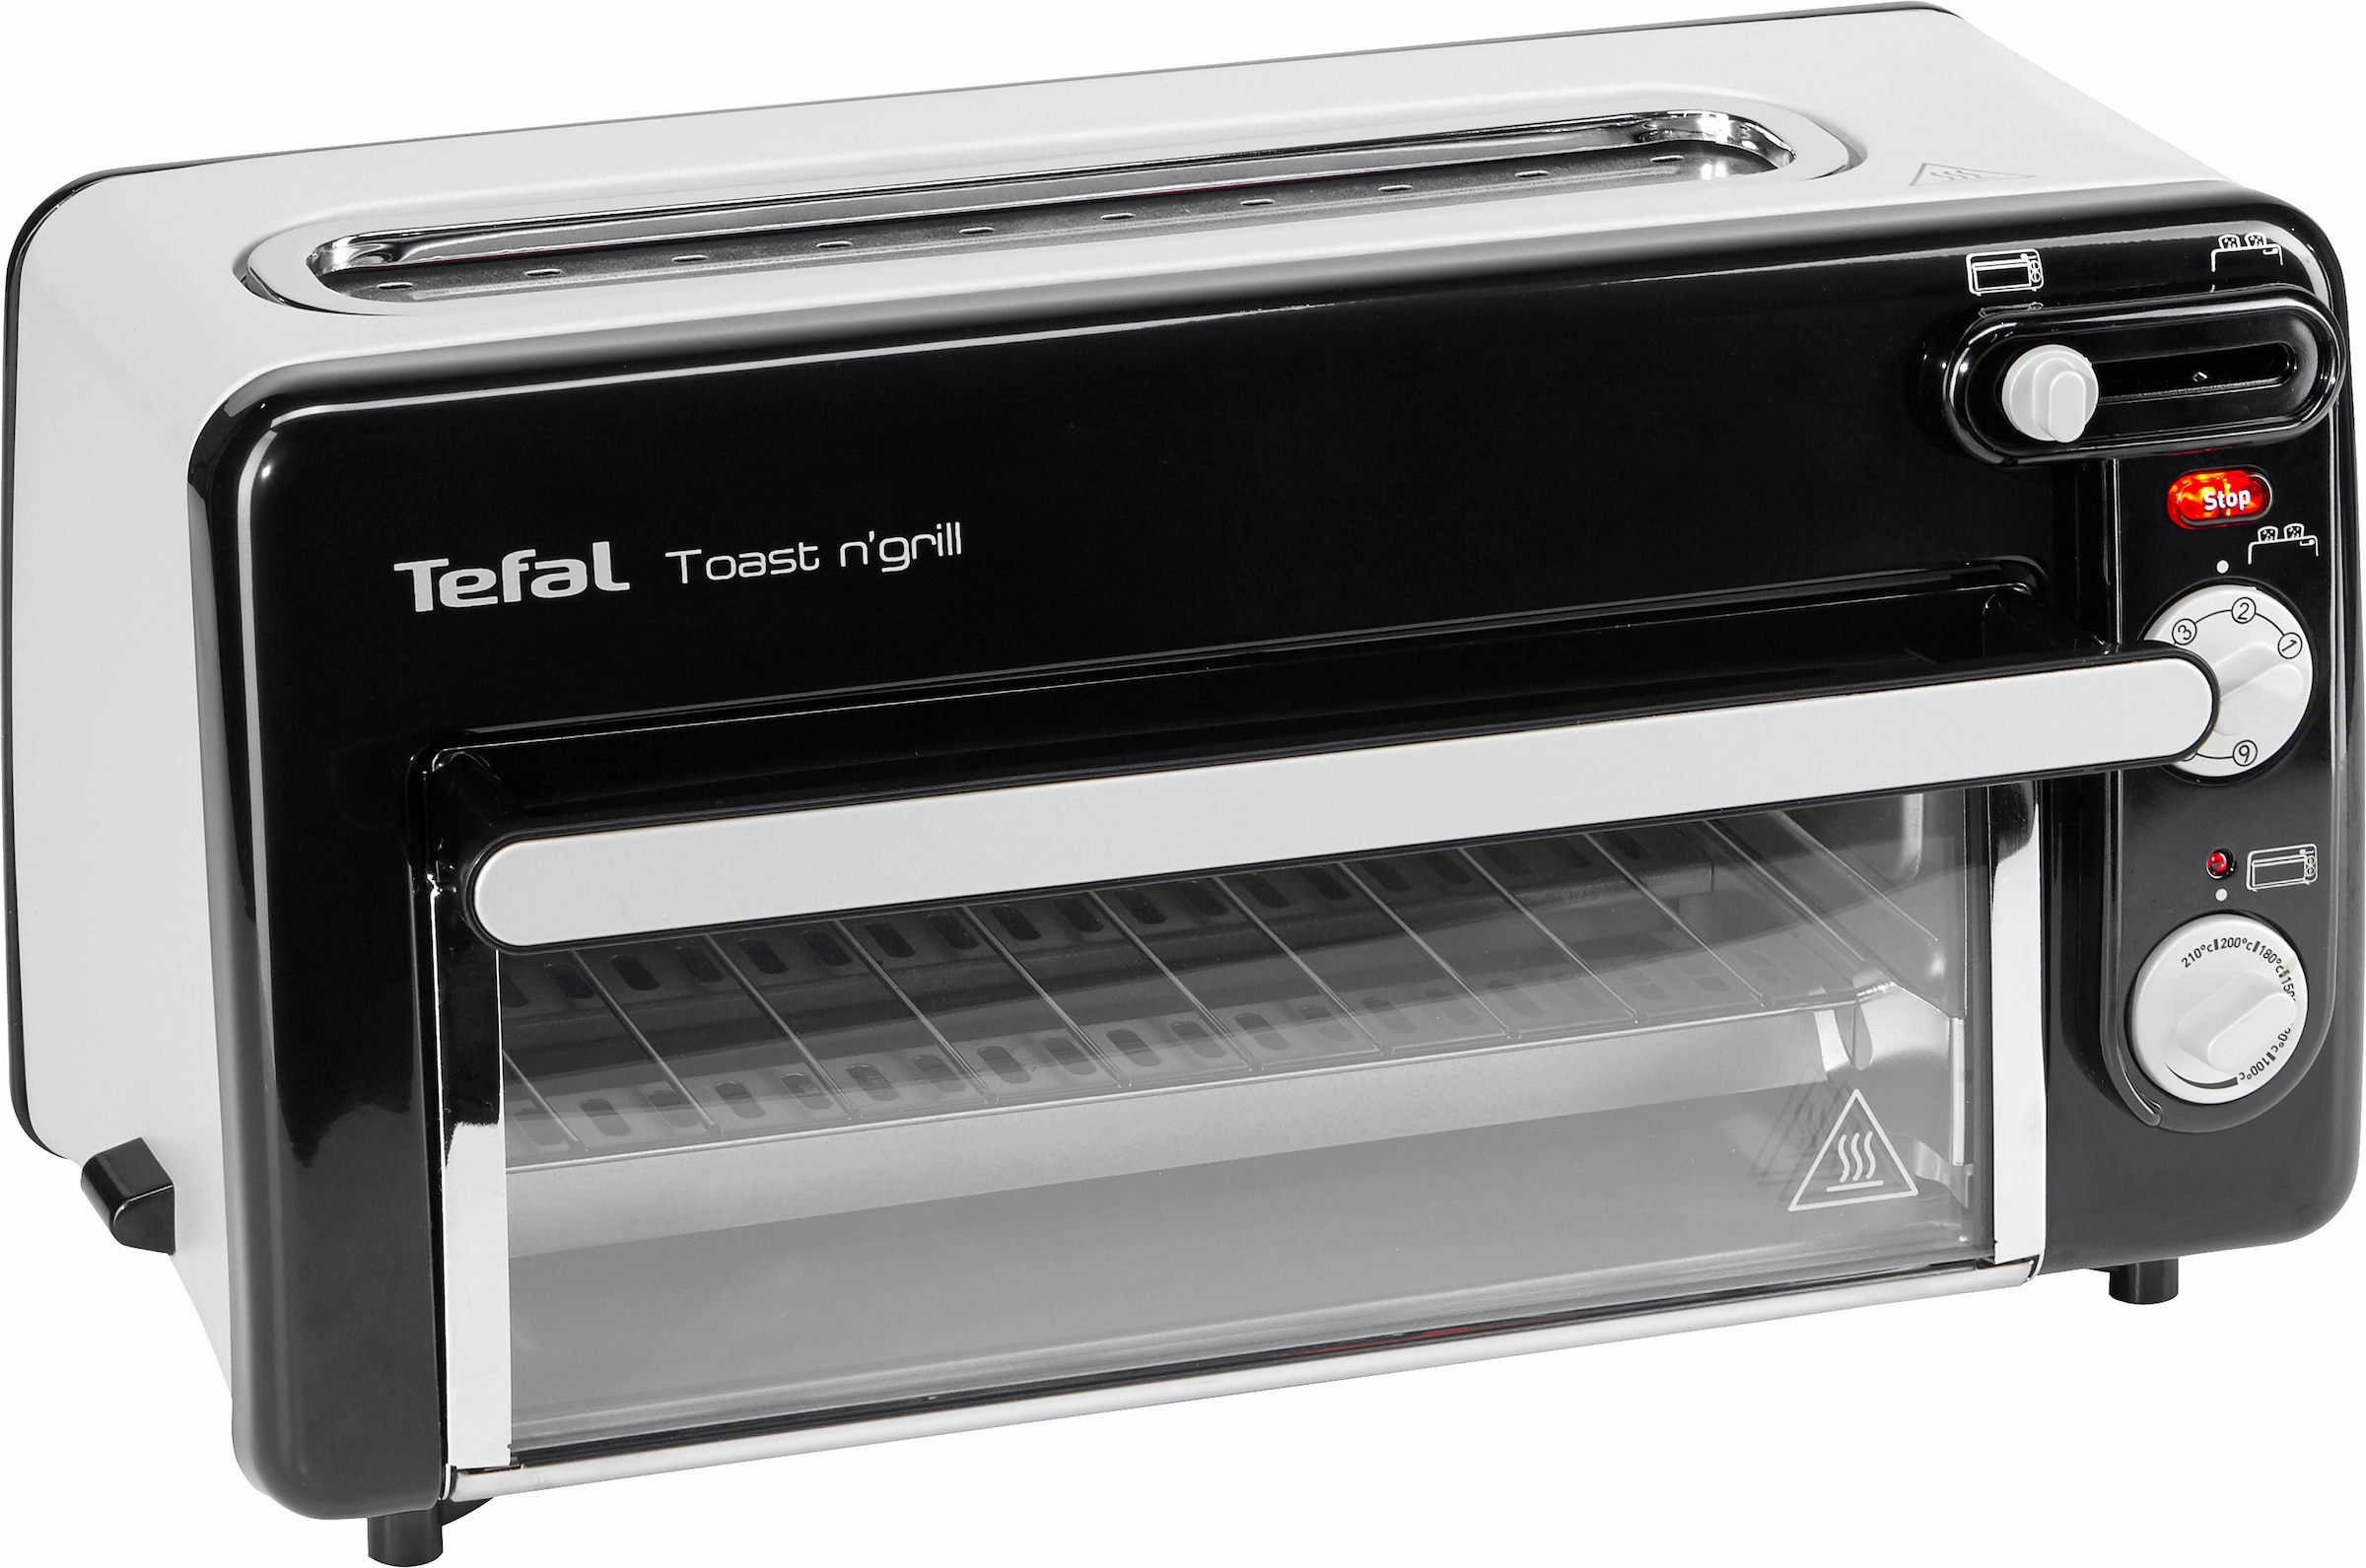 Tefal Minibackofen "TL6008 Toast n’ Grill", sehr energieeffizient und schnell, 1300 Watt